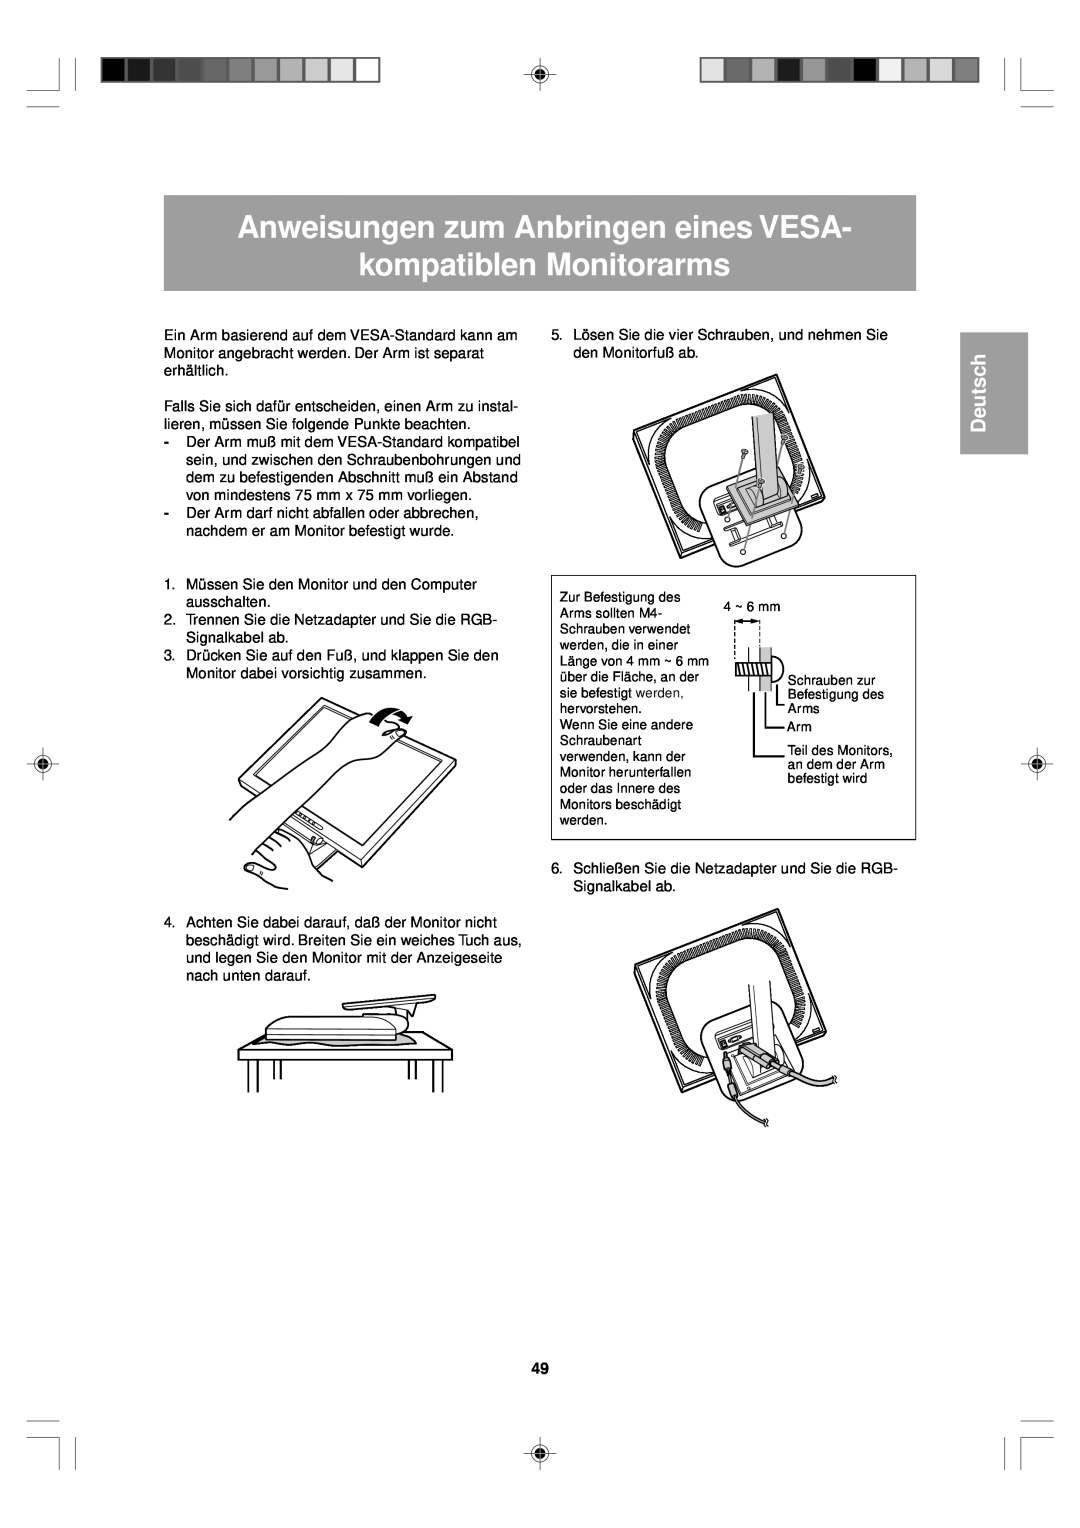 Sharp LL-T15V1 operation manual Anweisungen zum Anbringen eines VESA kompatiblen Monitorarms, Deutsch 